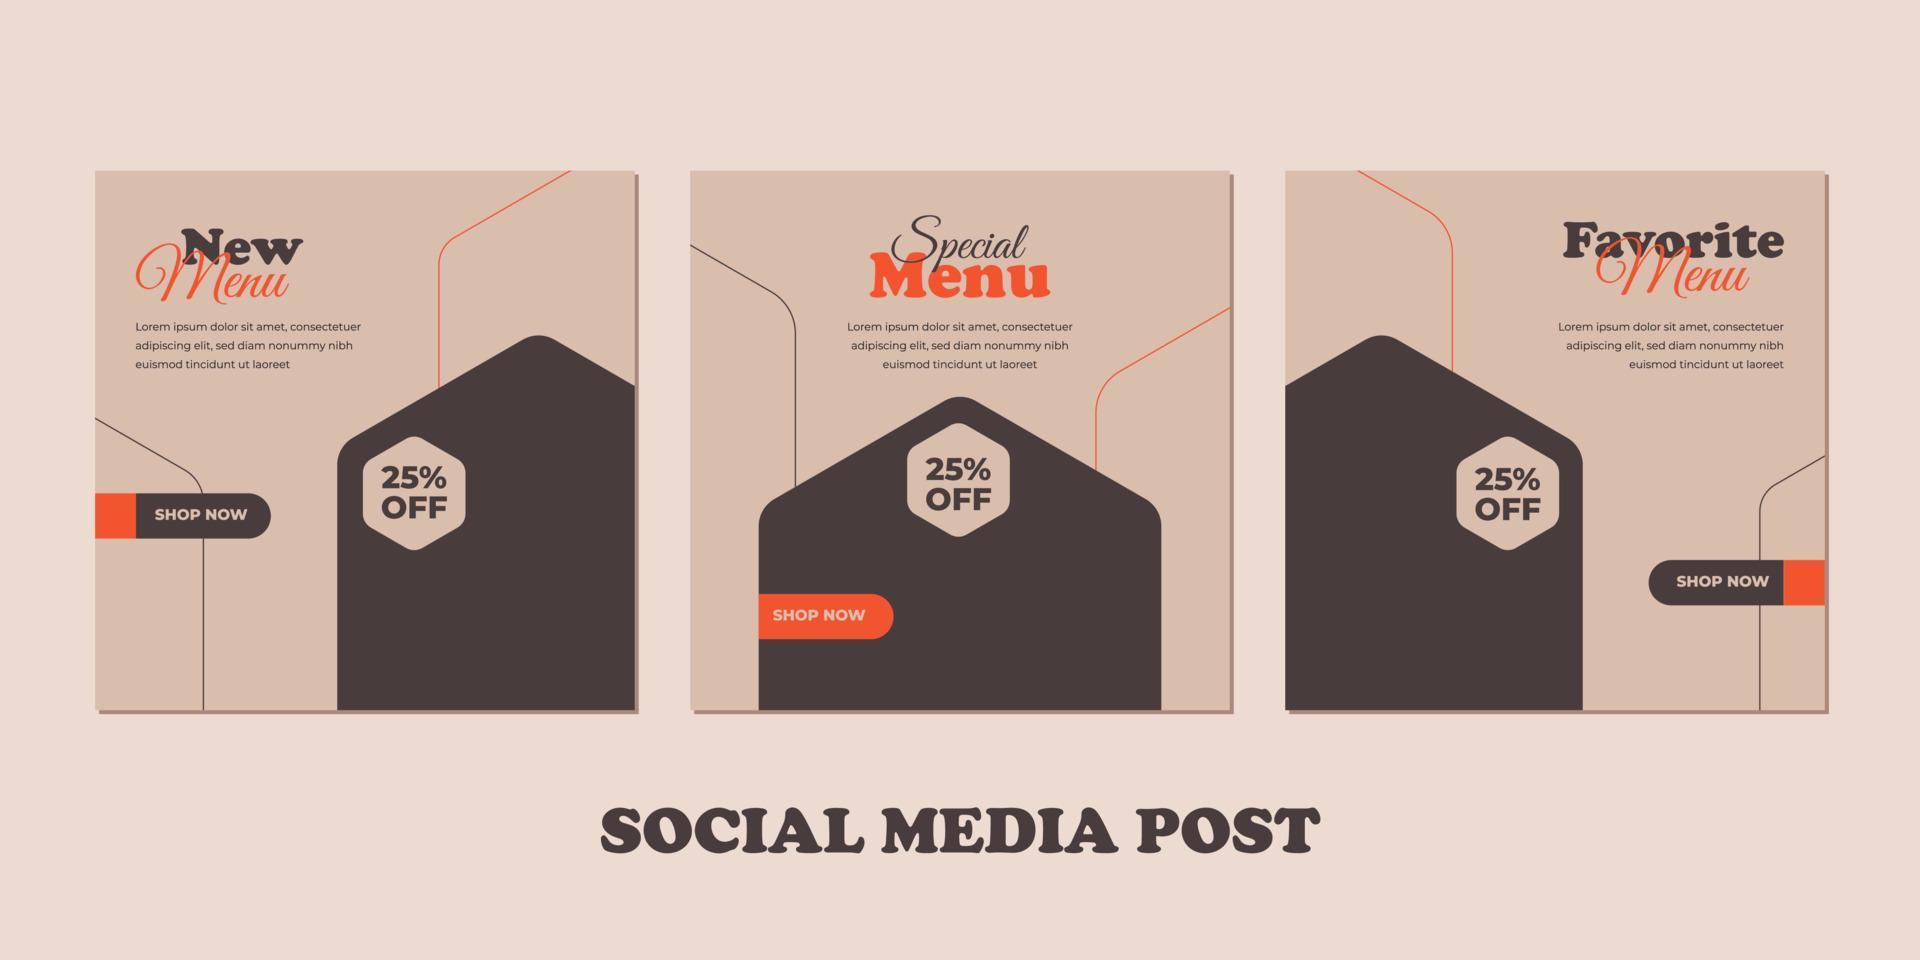 Publicación de redes sociales de banner de menú de comida. plantillas para promociones en el menú de comida. conjunto de historias de redes sociales y fotogramas de publicaciones. diseño de maquetación para marketing en redes sociales. vector